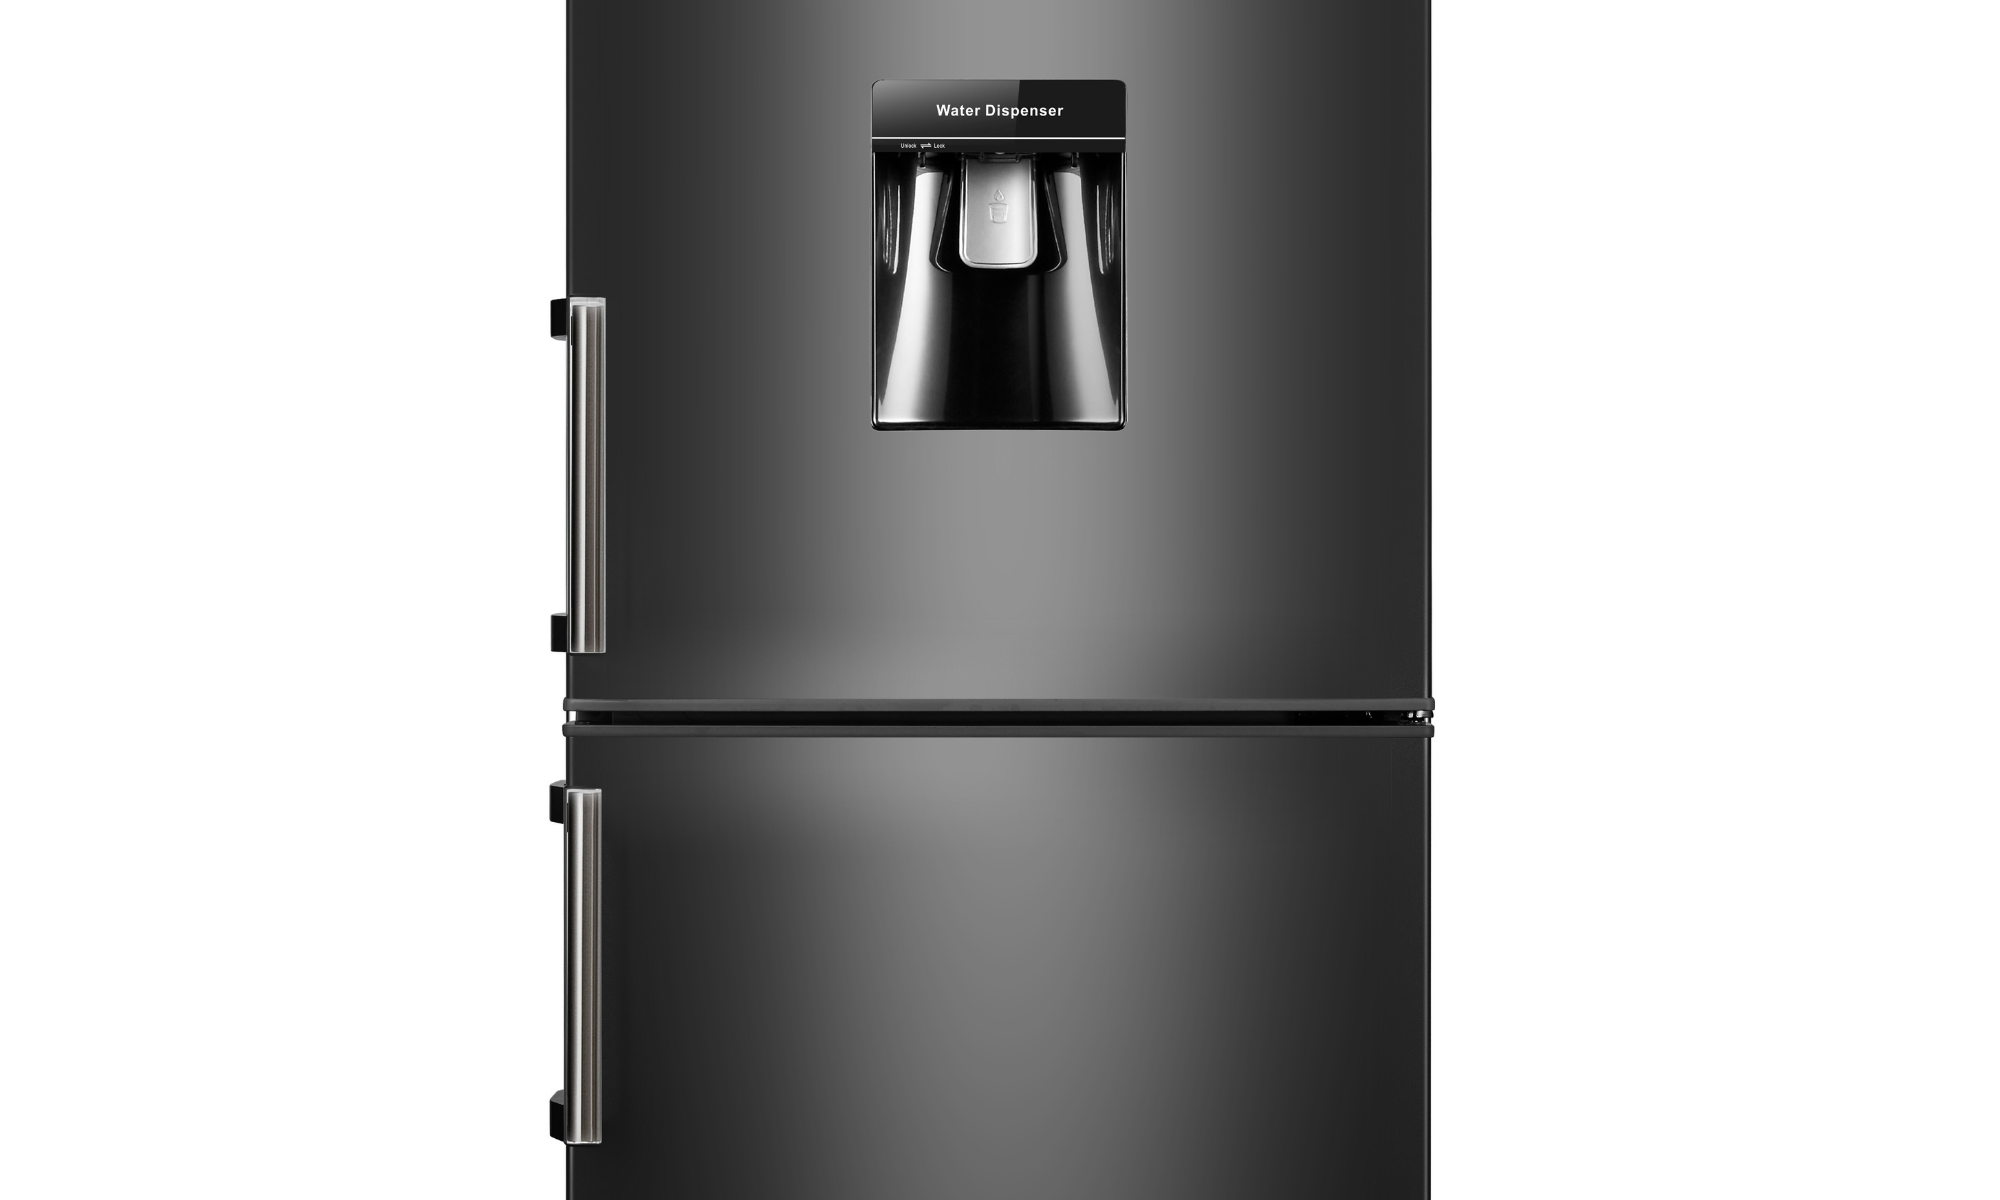 CONTINENTAL EDISON CEFC262DW - Froid statique 196L + 66L L 55 x H 180 cm Refrigerateur combine 262L A+